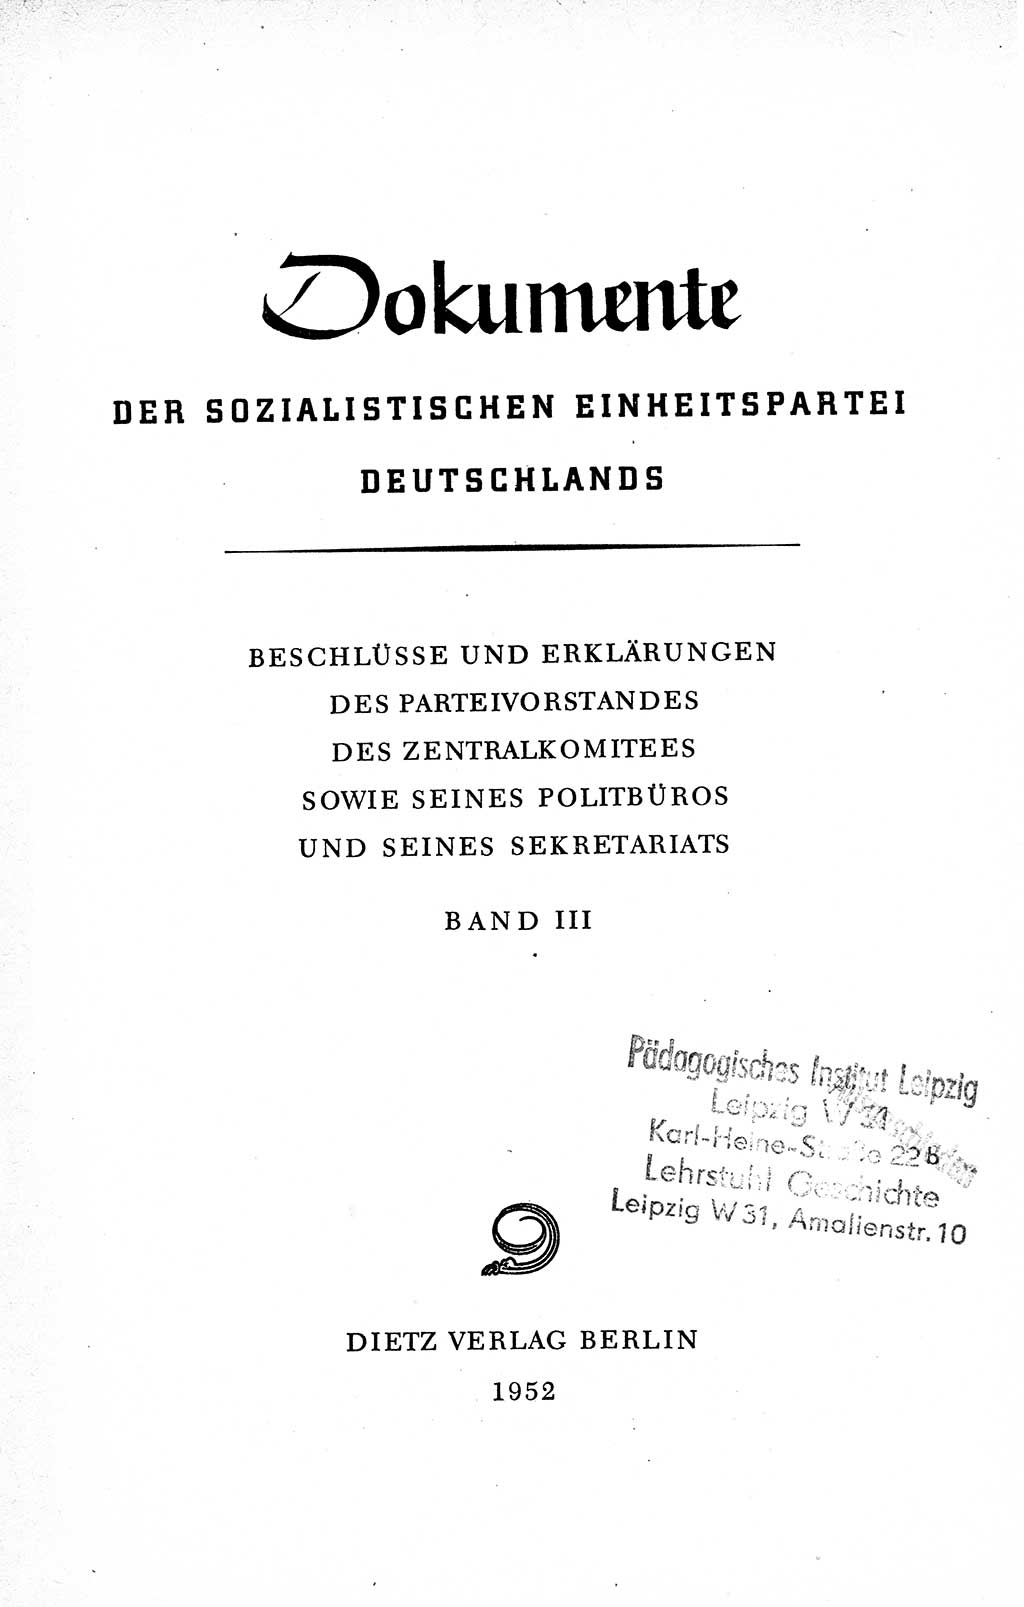 Dokumente der Sozialistischen Einheitspartei Deutschlands (SED) [Deutsche Demokratische Republik (DDR)] 1950-1952, Seite 3 (Dok. SED DDR 1950-1952, S. 3)